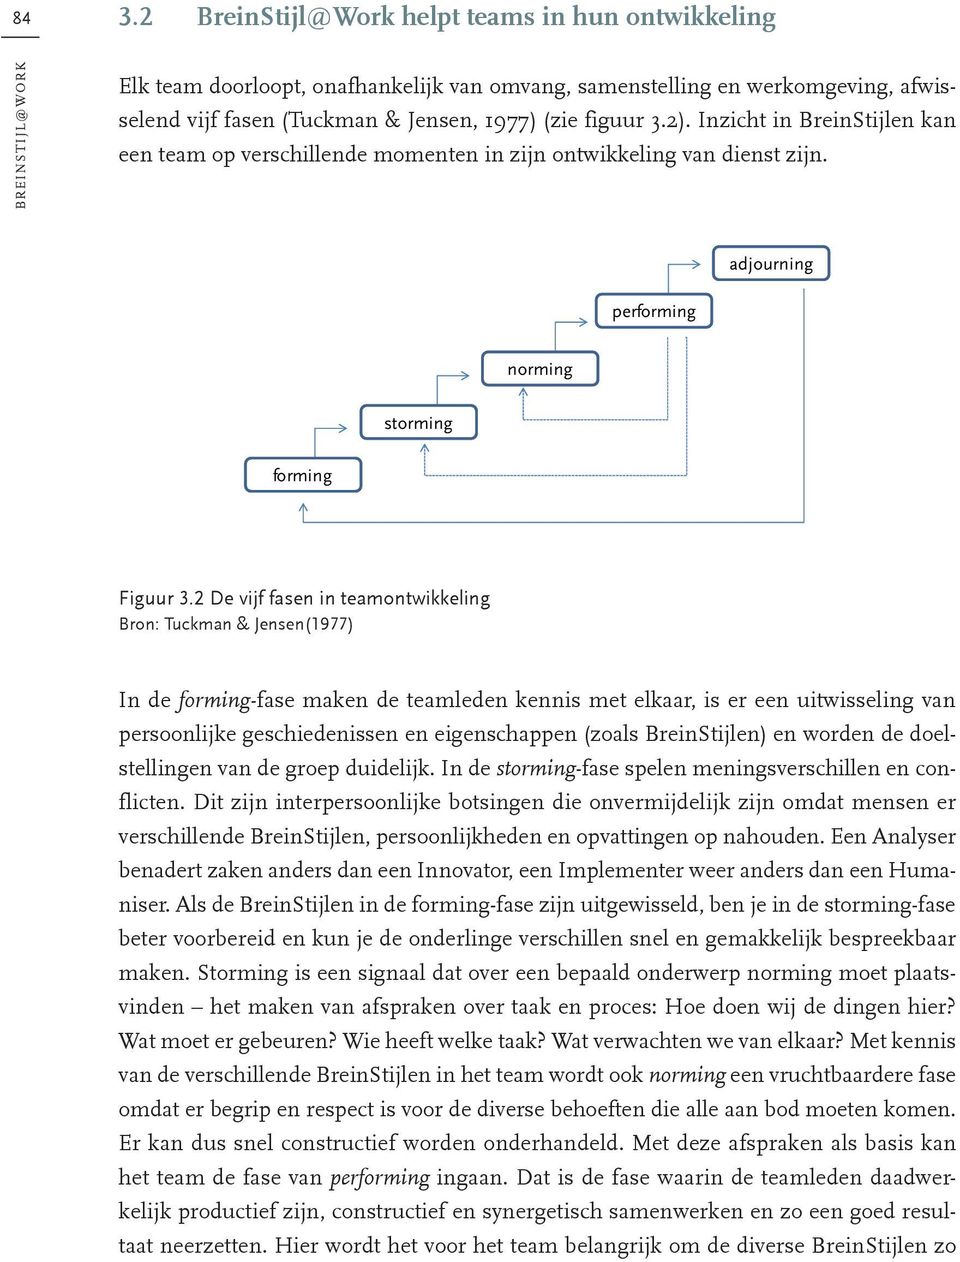 2 De vijf fasen in teamontwikkeling Bron: Tuckman & Jensen(1977) In de forming-fase maken de teamleden kennis met elkaar, is er een uitwisseling van persoonlijke geschiedenissen en eigenschappen